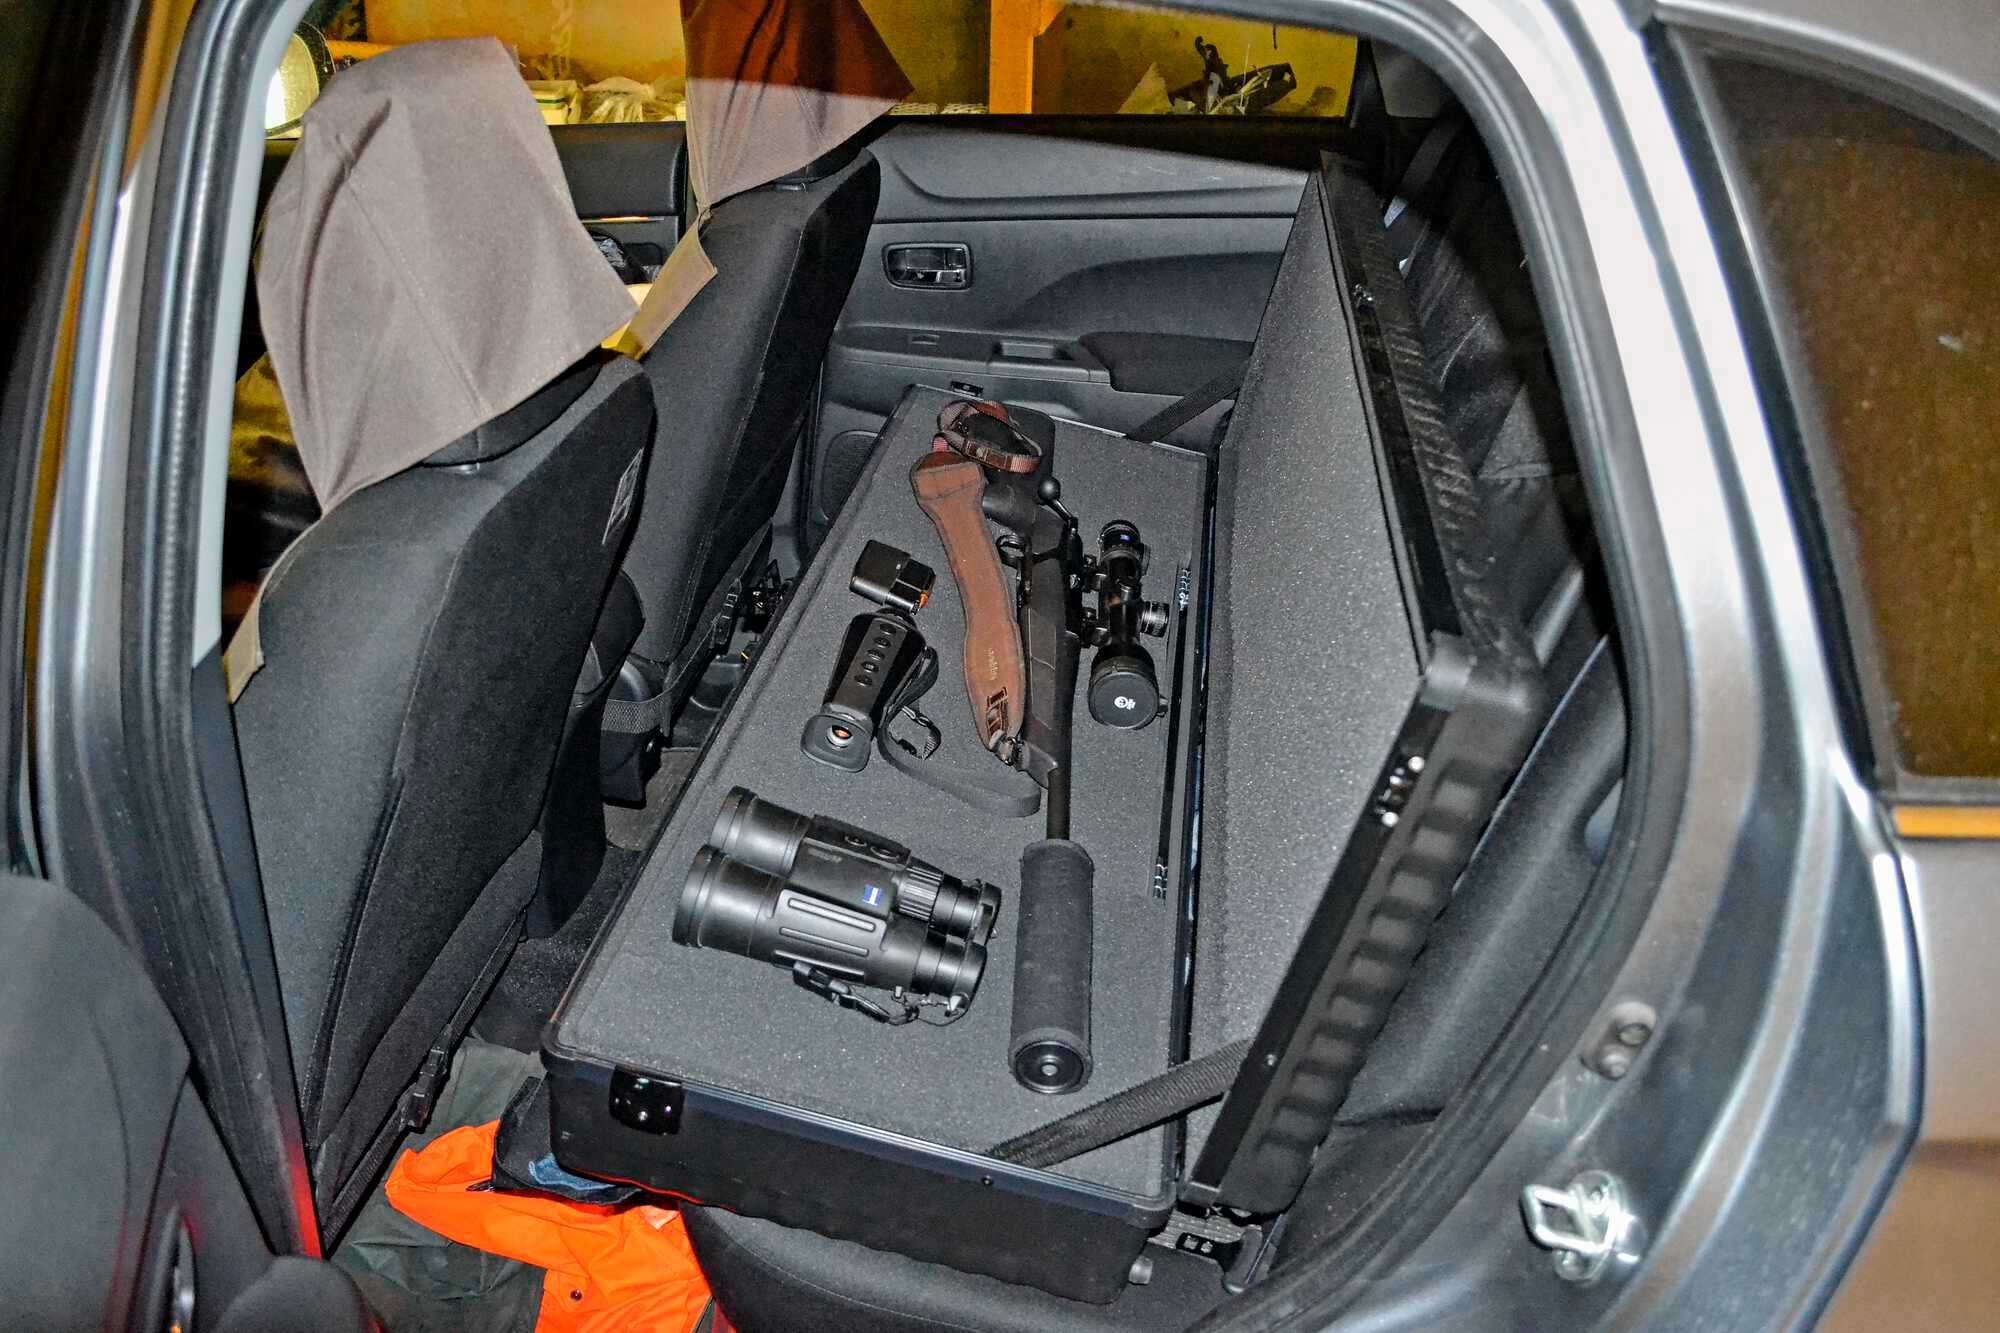 Waffenkoffer mit Isofix-Halterung - Sicherer Transport der Waffe